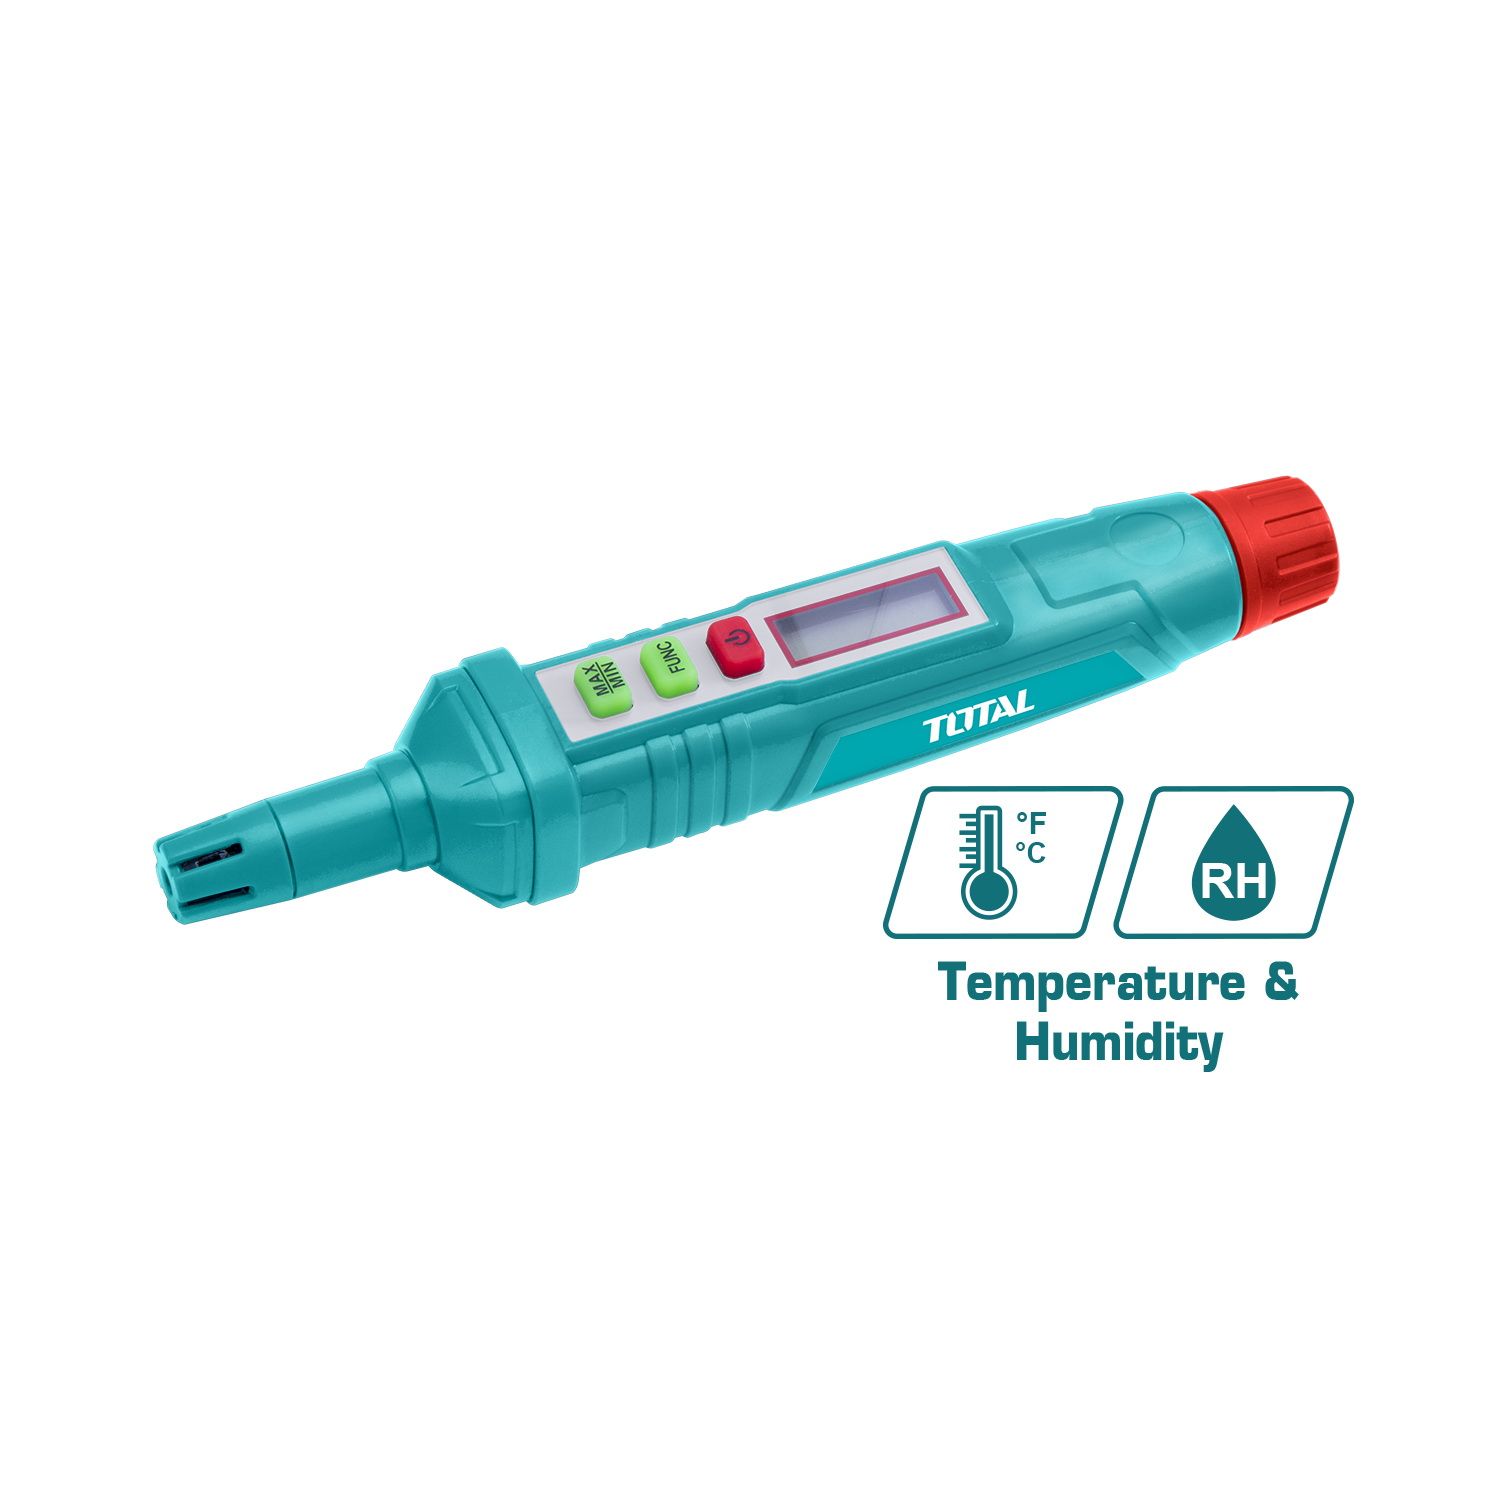  Máy đo độ ẩm và nhiệt độ kỹ thuật số Total TETHT23 